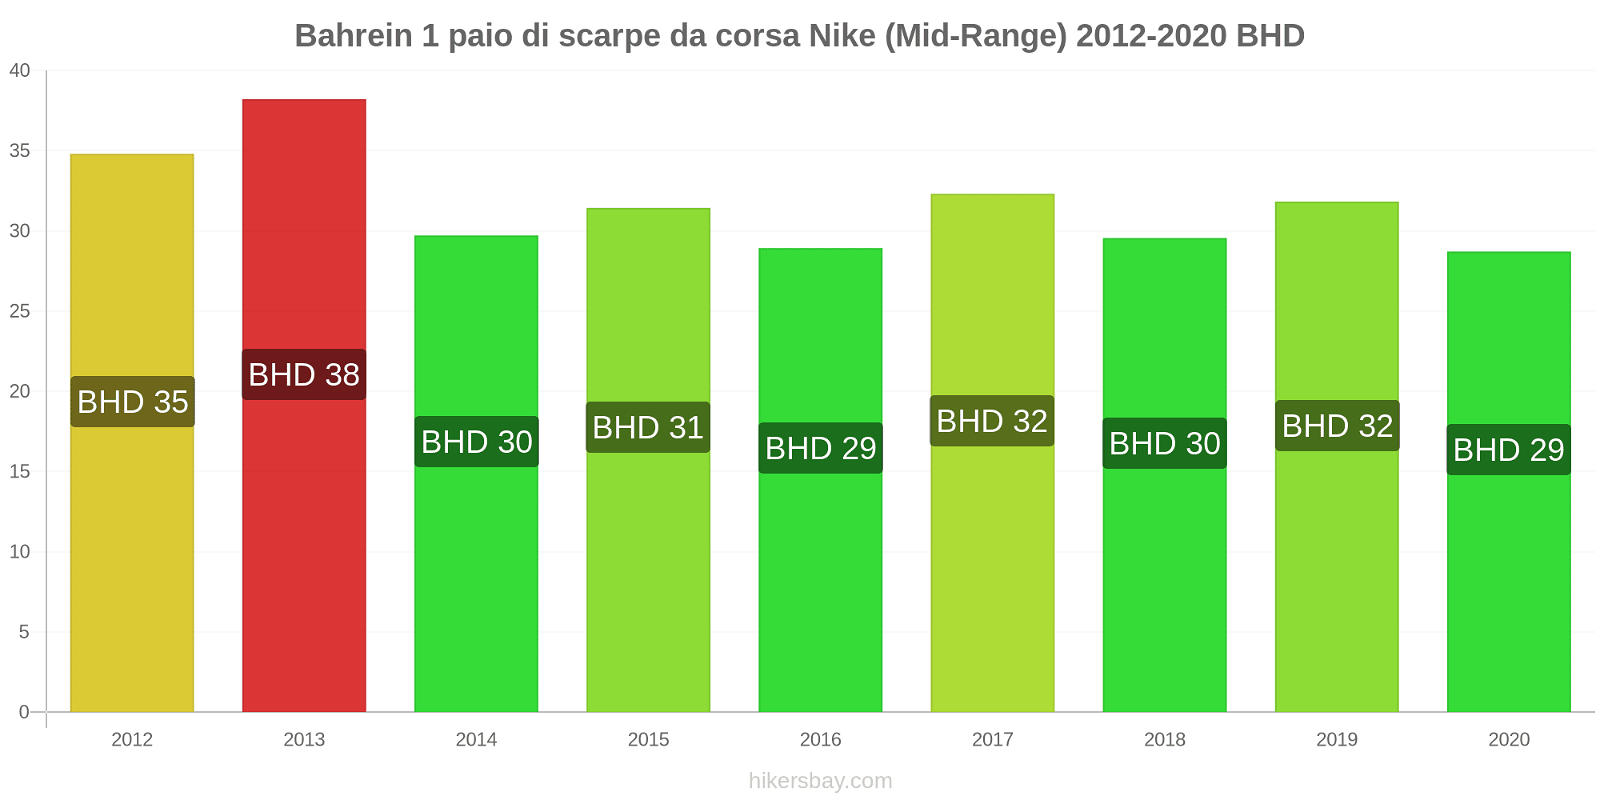 Bahrein variazioni di prezzo 1 paio di scarpe da corsa Nike (simile) hikersbay.com